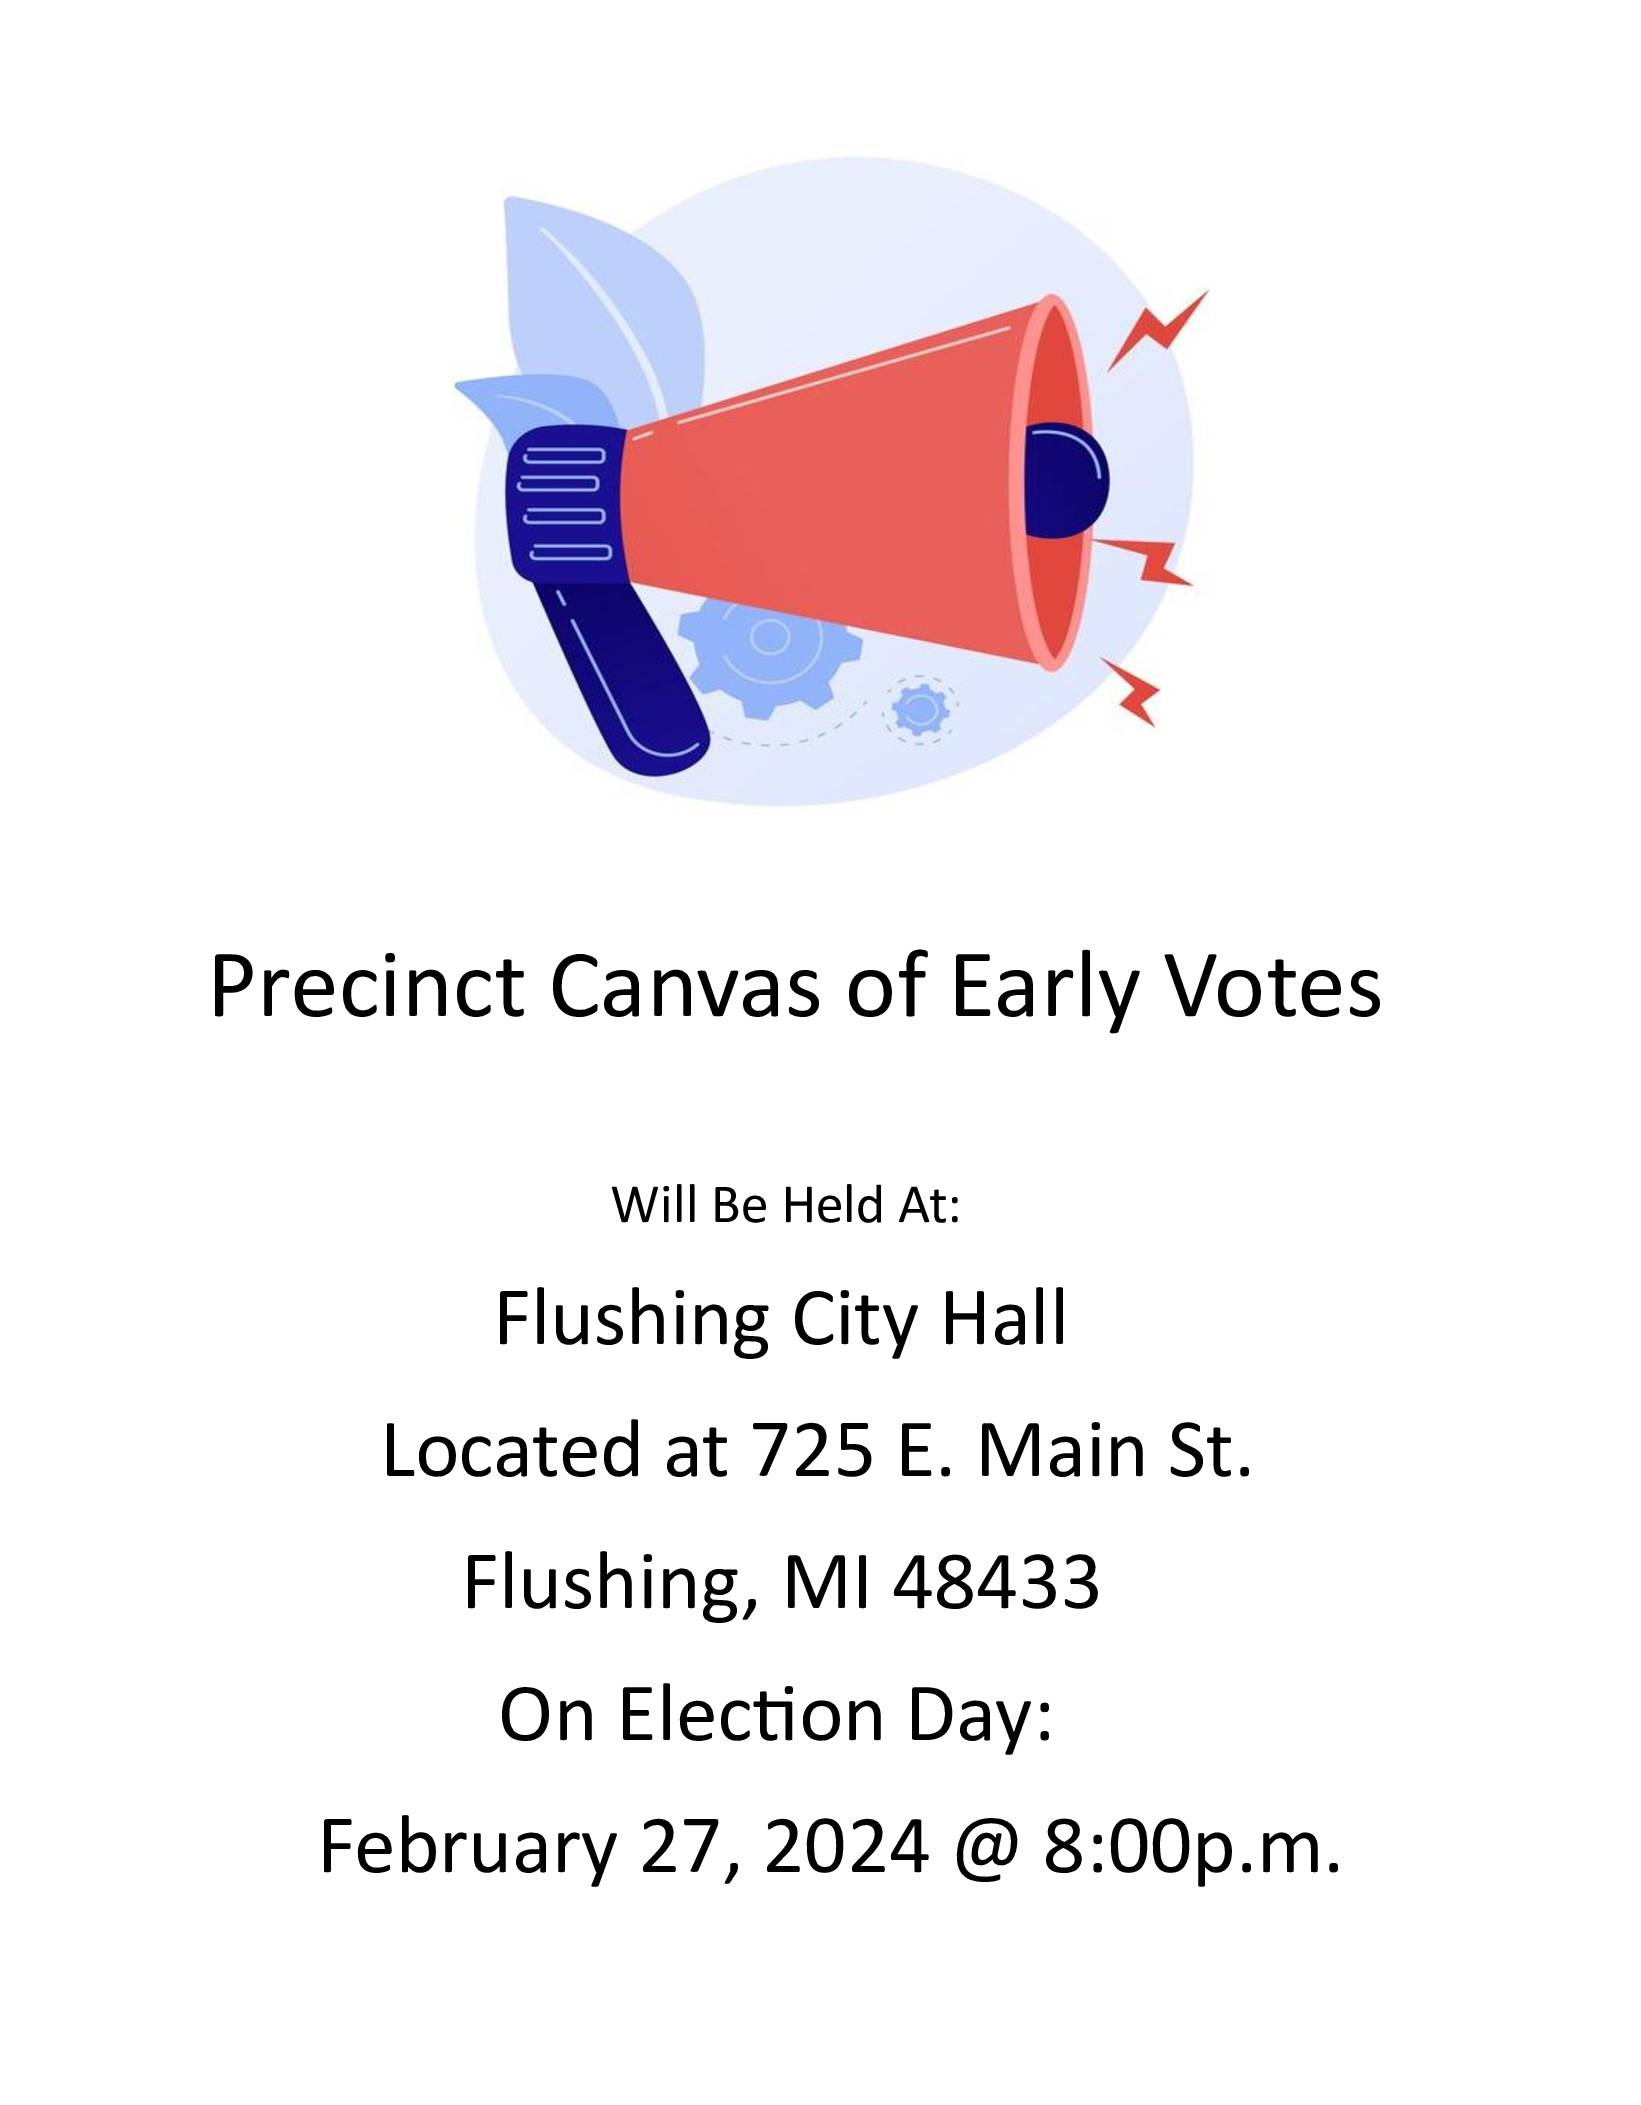 Precinct-Canvas-of-Early-Votes - Copy